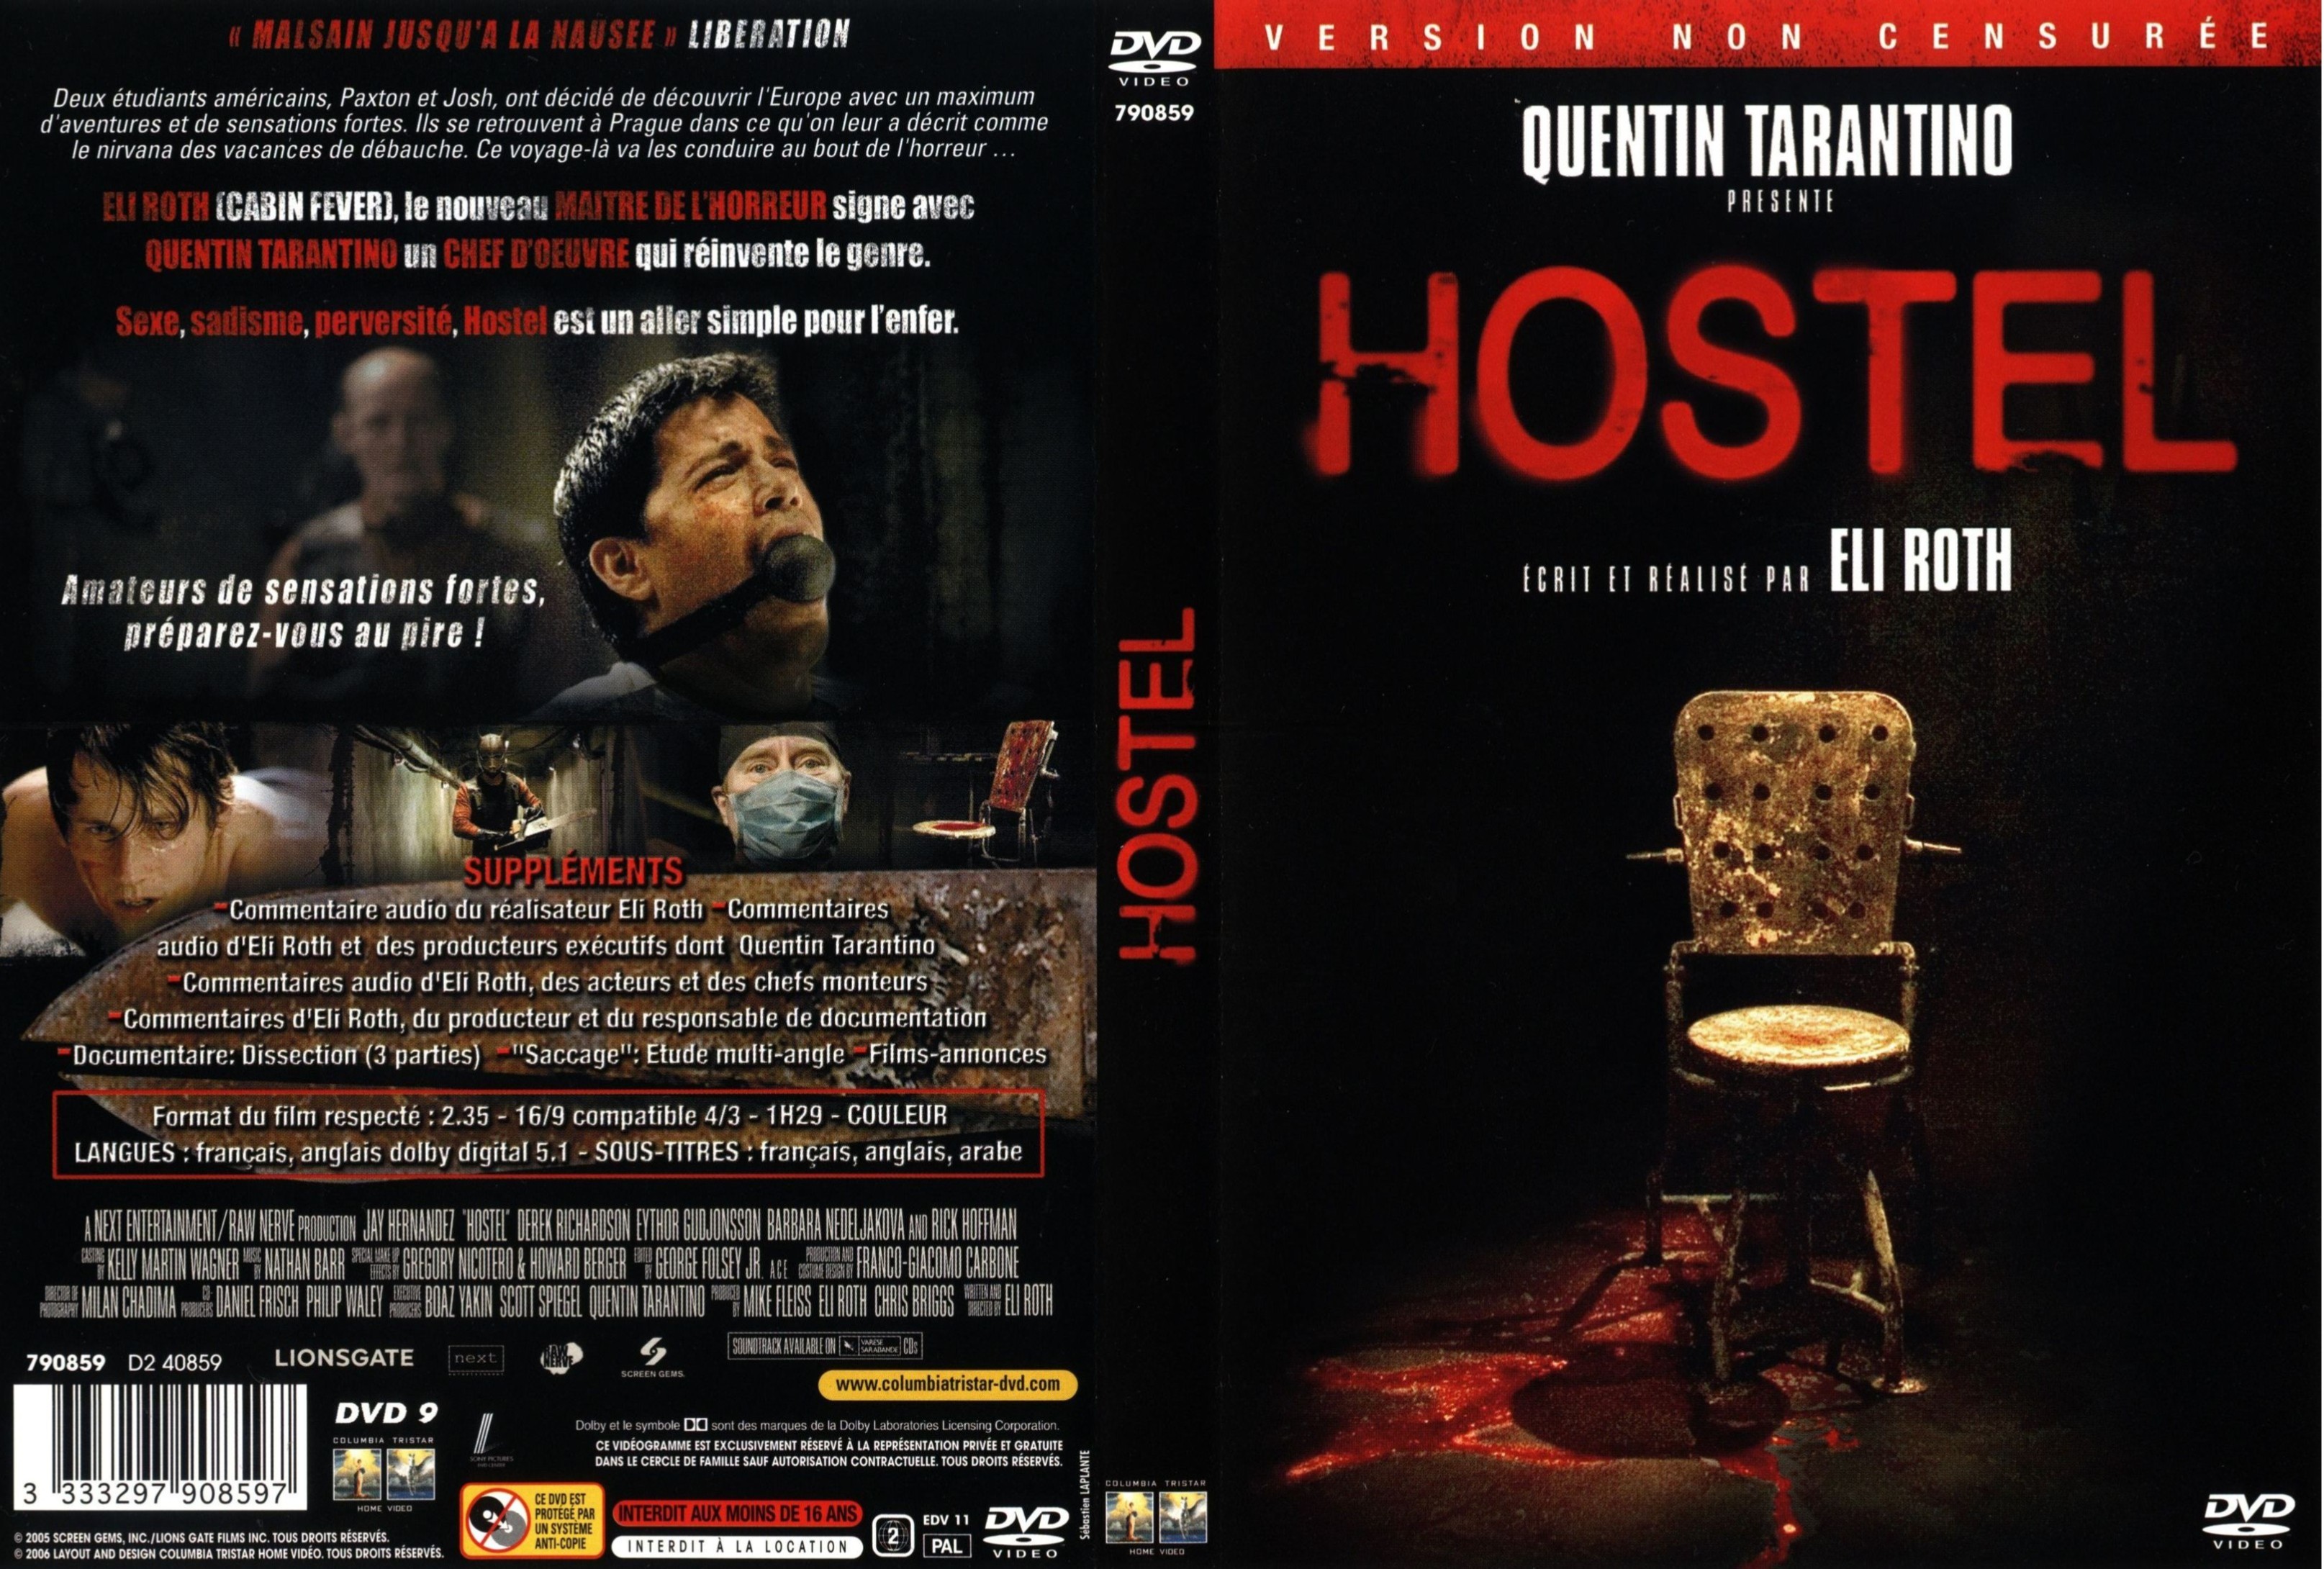 Jaquette DVD Hostel v2